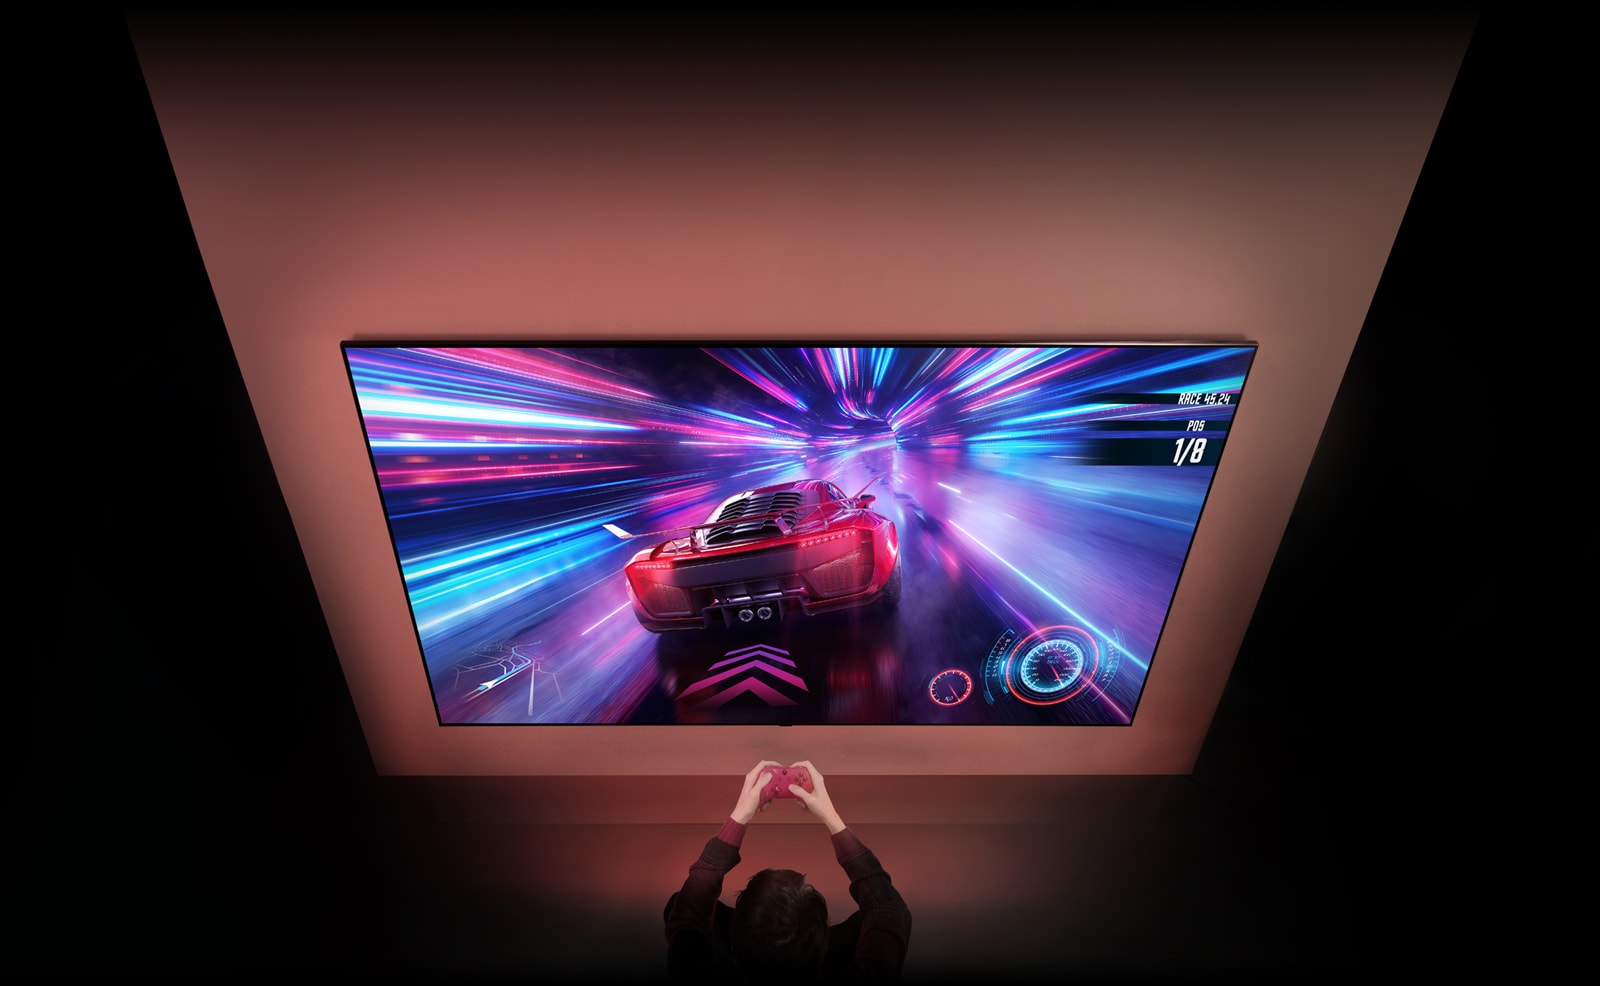 Na steni je velik televizor in na zaslonu lahko vidite zaslon z dirkalno video igro.  Pred televizorjem lahko vidite roke in kontrole osebe, ki je osredotočena na igro.